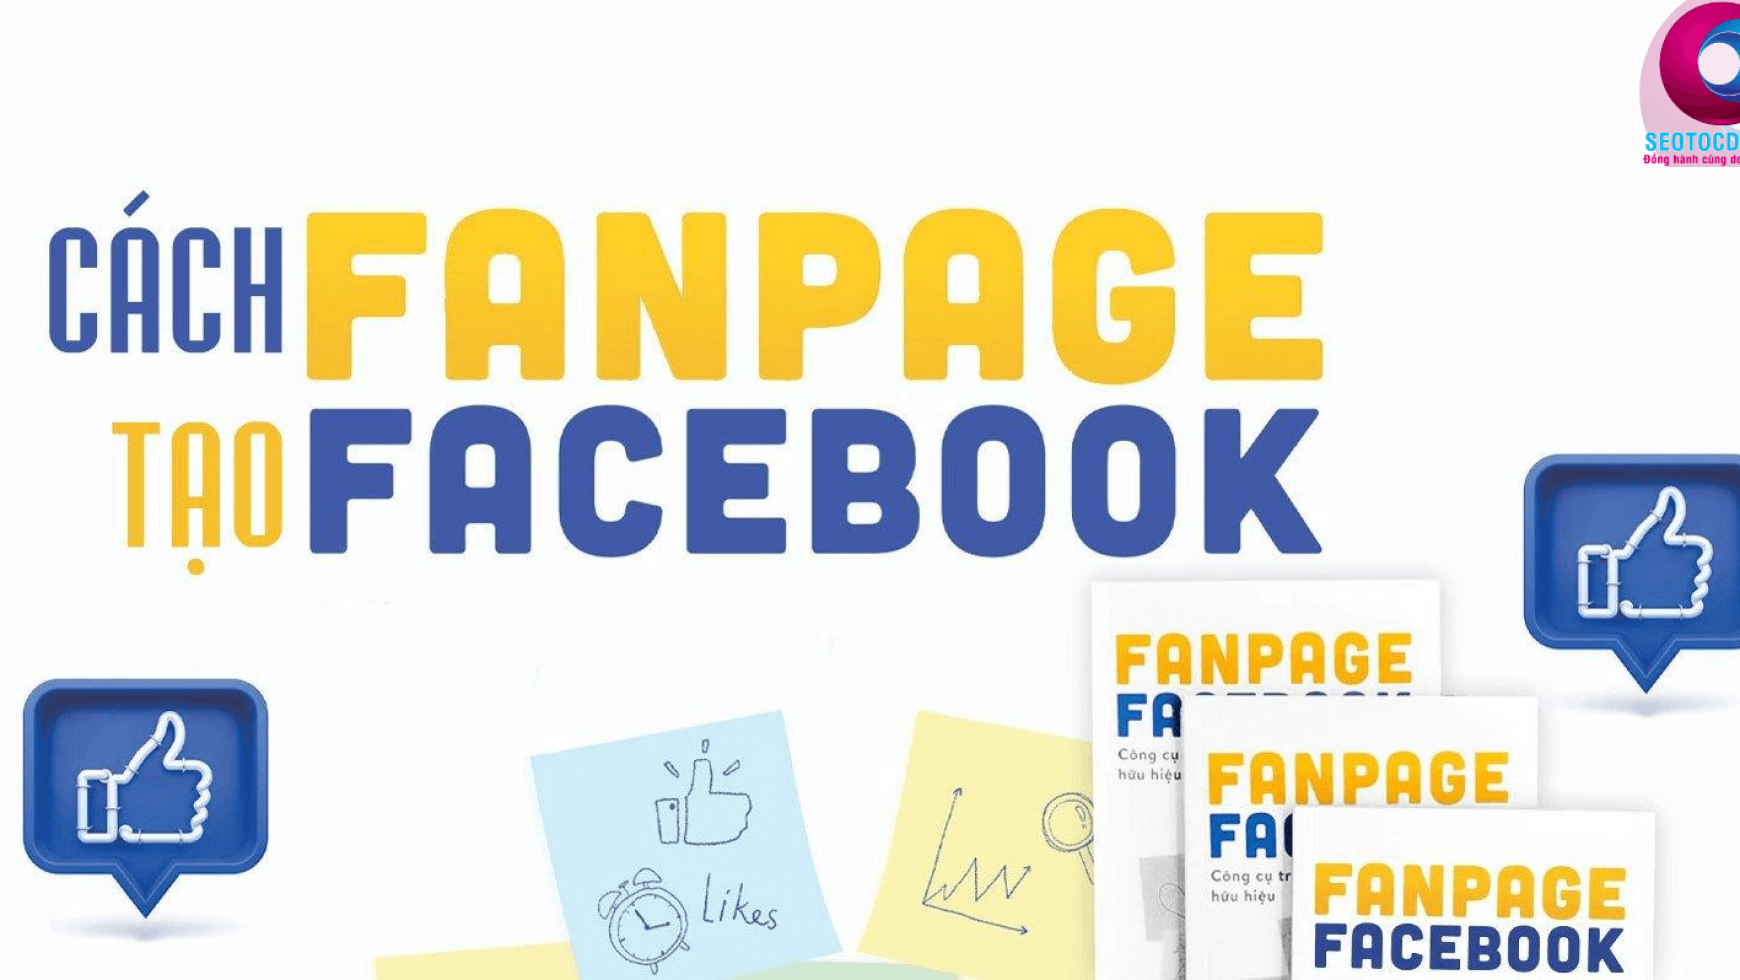 Cách tạo fanpage facebook bán hàng chất lượng, lên TOP tìm kiếm nhanh